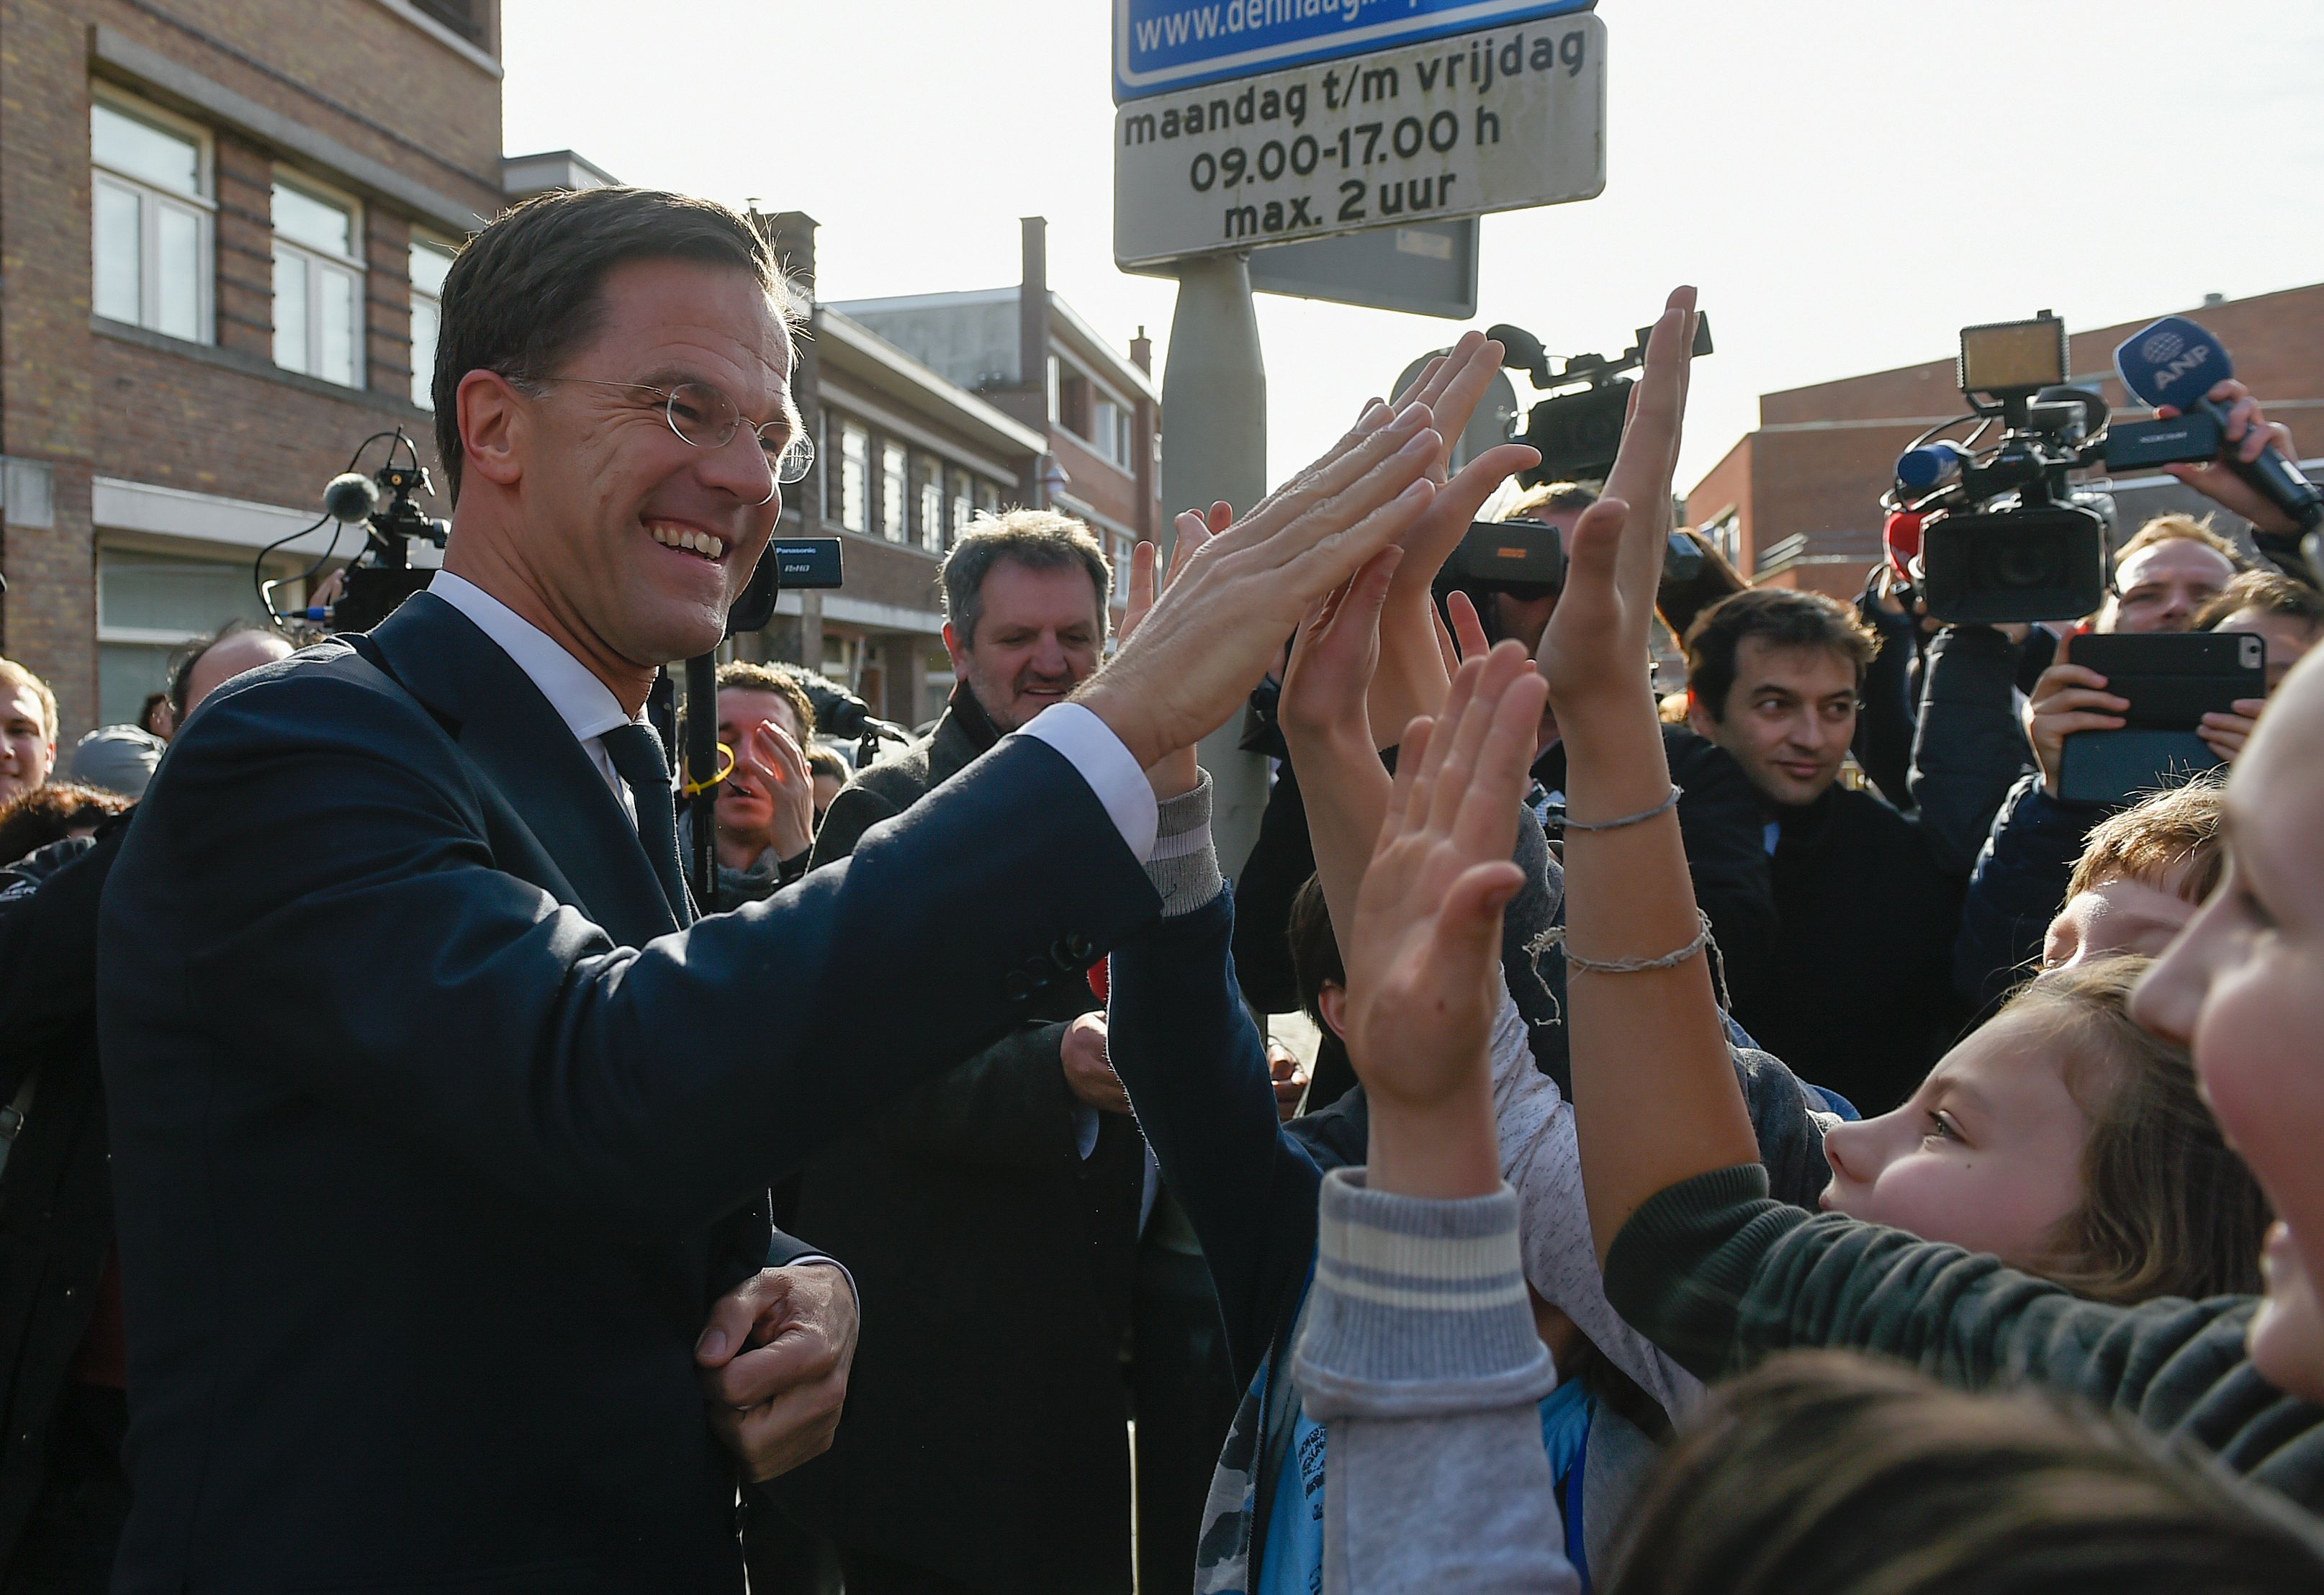 Niederlande-Wahl: Deutsche Politik erleichtert über Ruttes Sieg